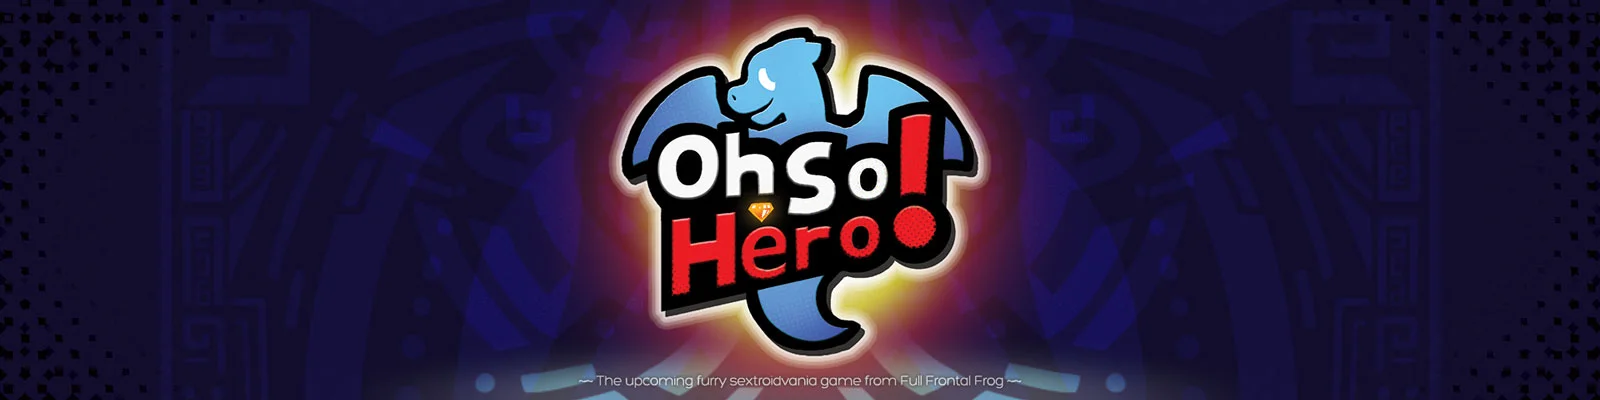 Oh So Hero! Pre Edition II v.0.18.500